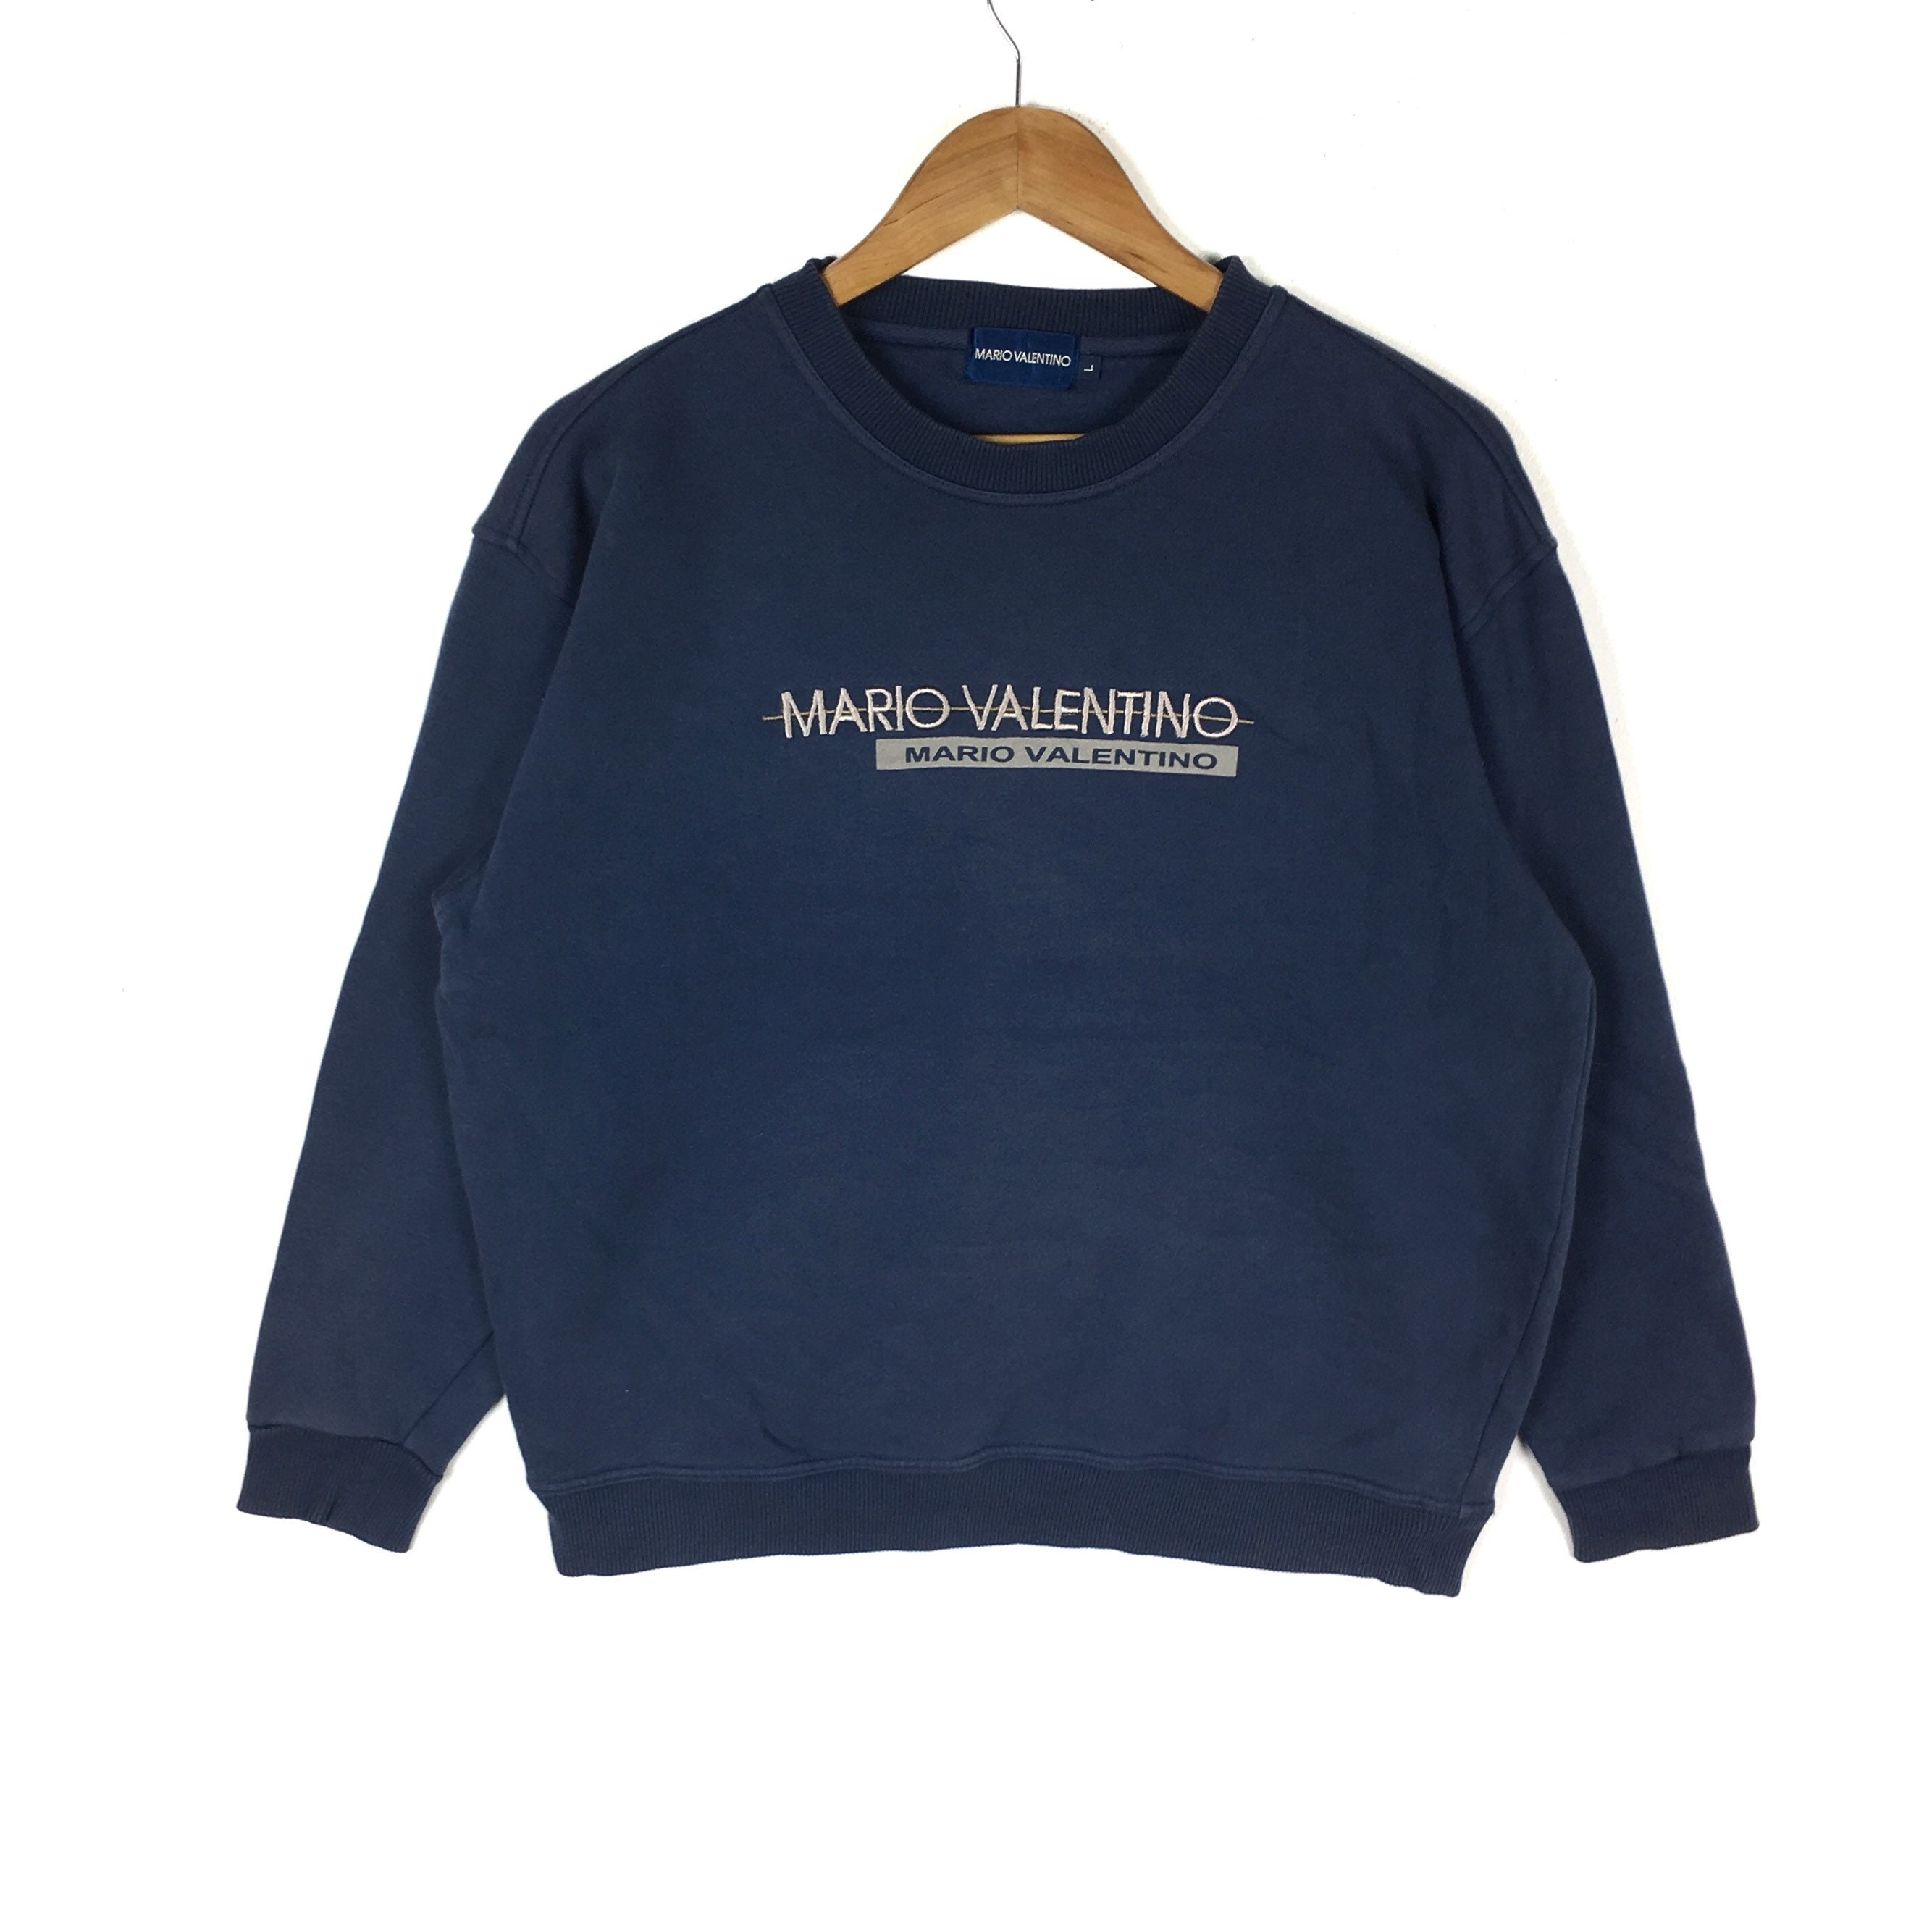 Mario Valentino Sweatshirt Big Logo Spellout Embroidered -  Hong Kong